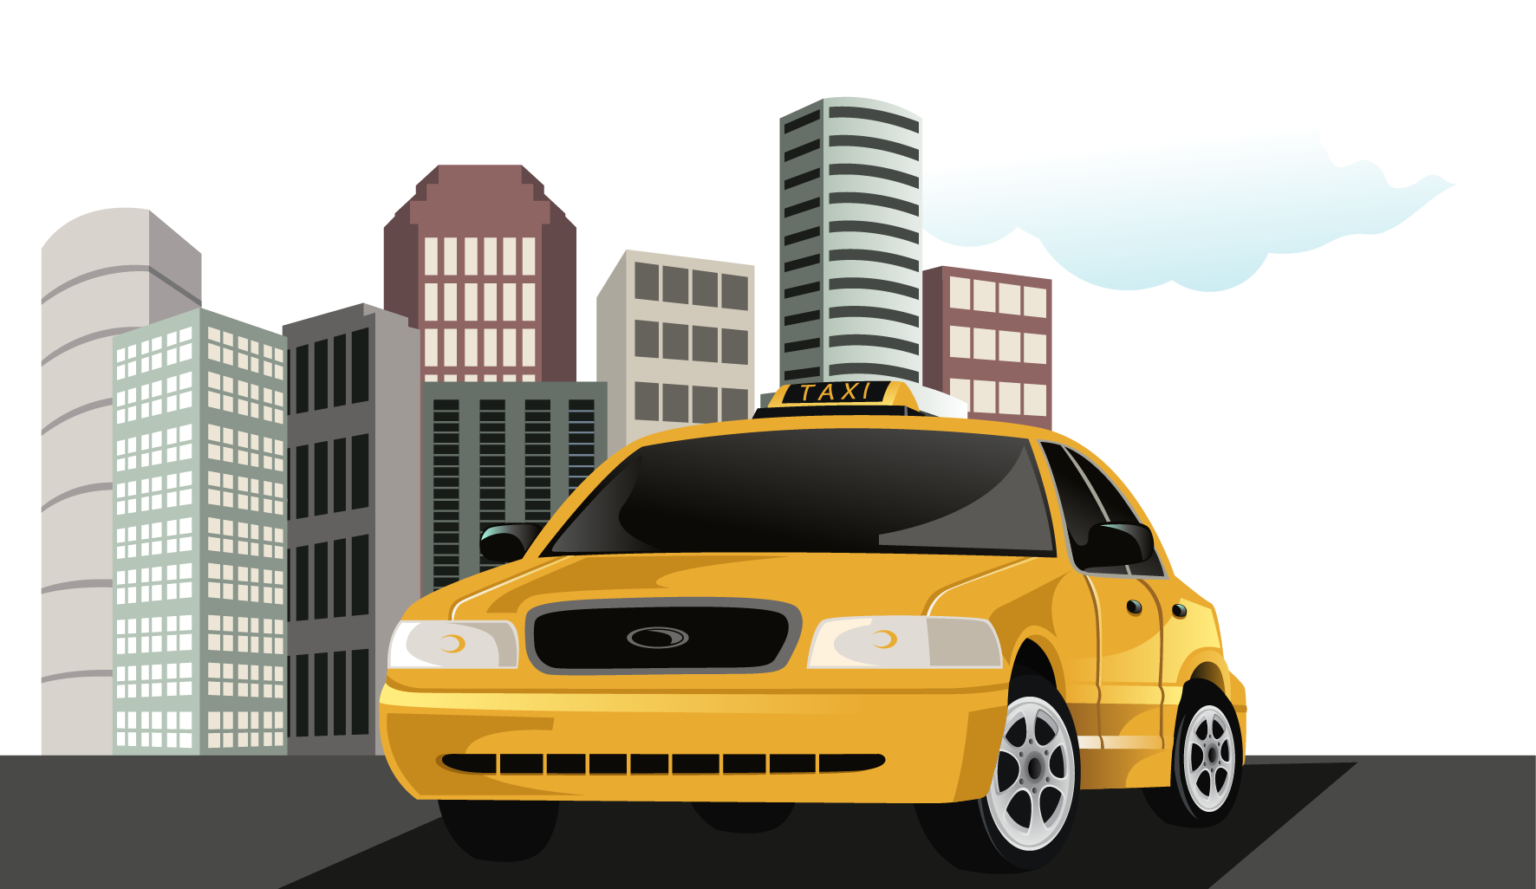 Введен законодательный запрет на работу в такси и городском транспорте лиц, имеющий судимости за отдельные категории преступлений.